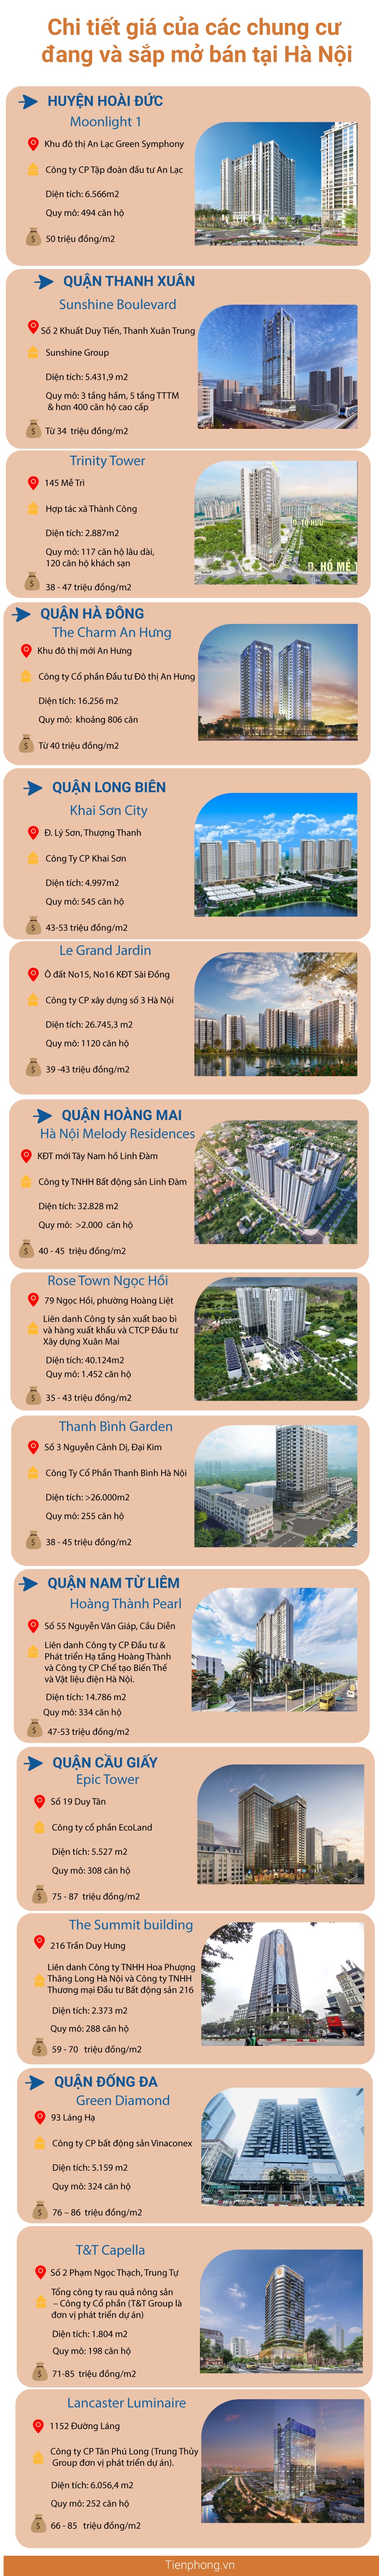 &#39;&#39;Choáng&#39;&#39; với giá căn hộ đang và sắp mở bán tại Hà Nội, có nơi 100 triệu m2 - 1